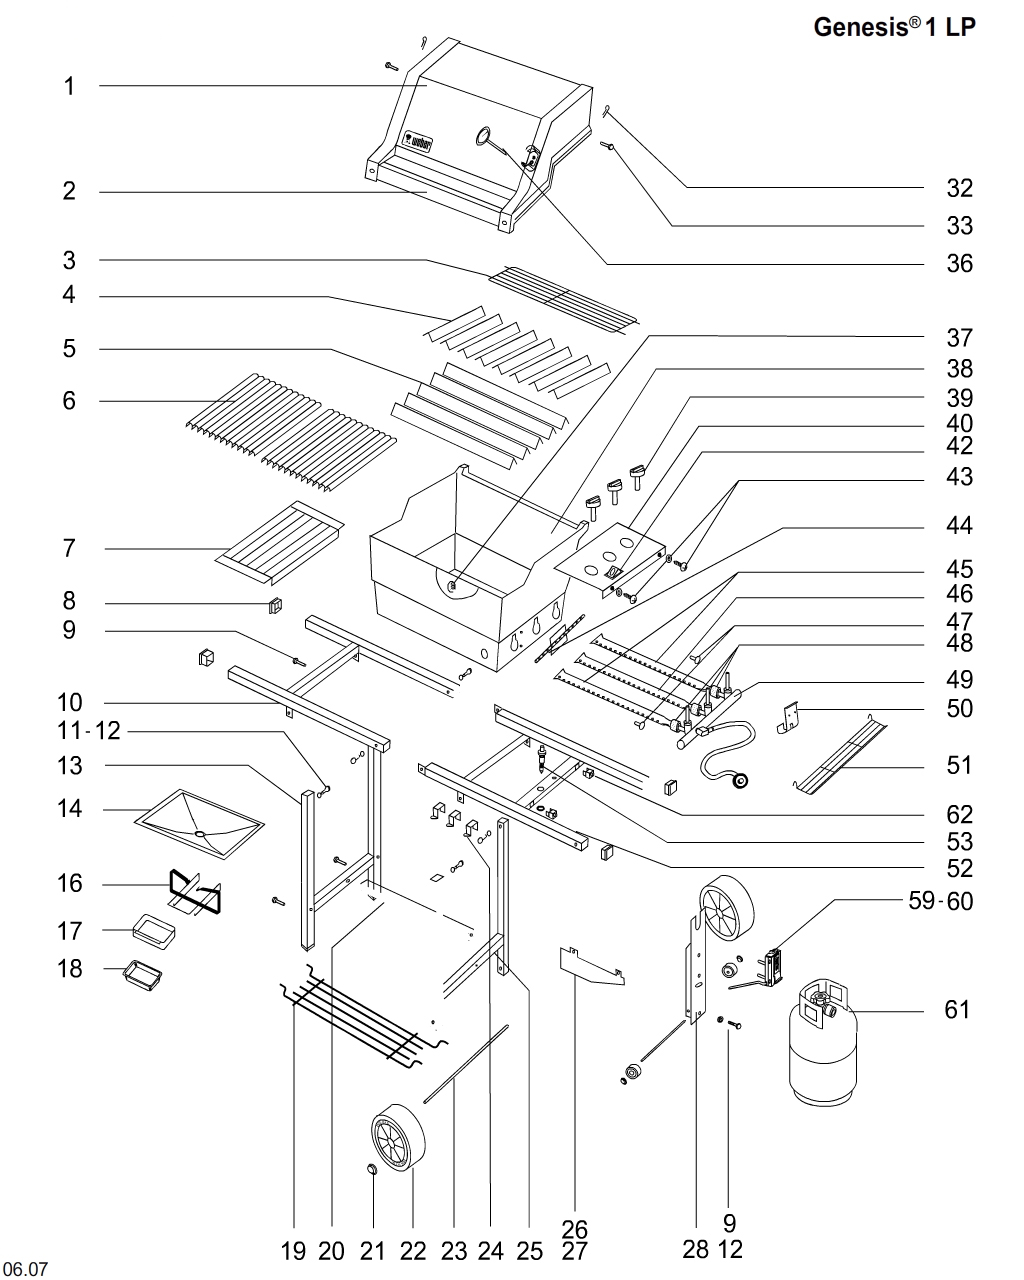 Weber Genesis Special Edition Parts Diagram - Bios Pics